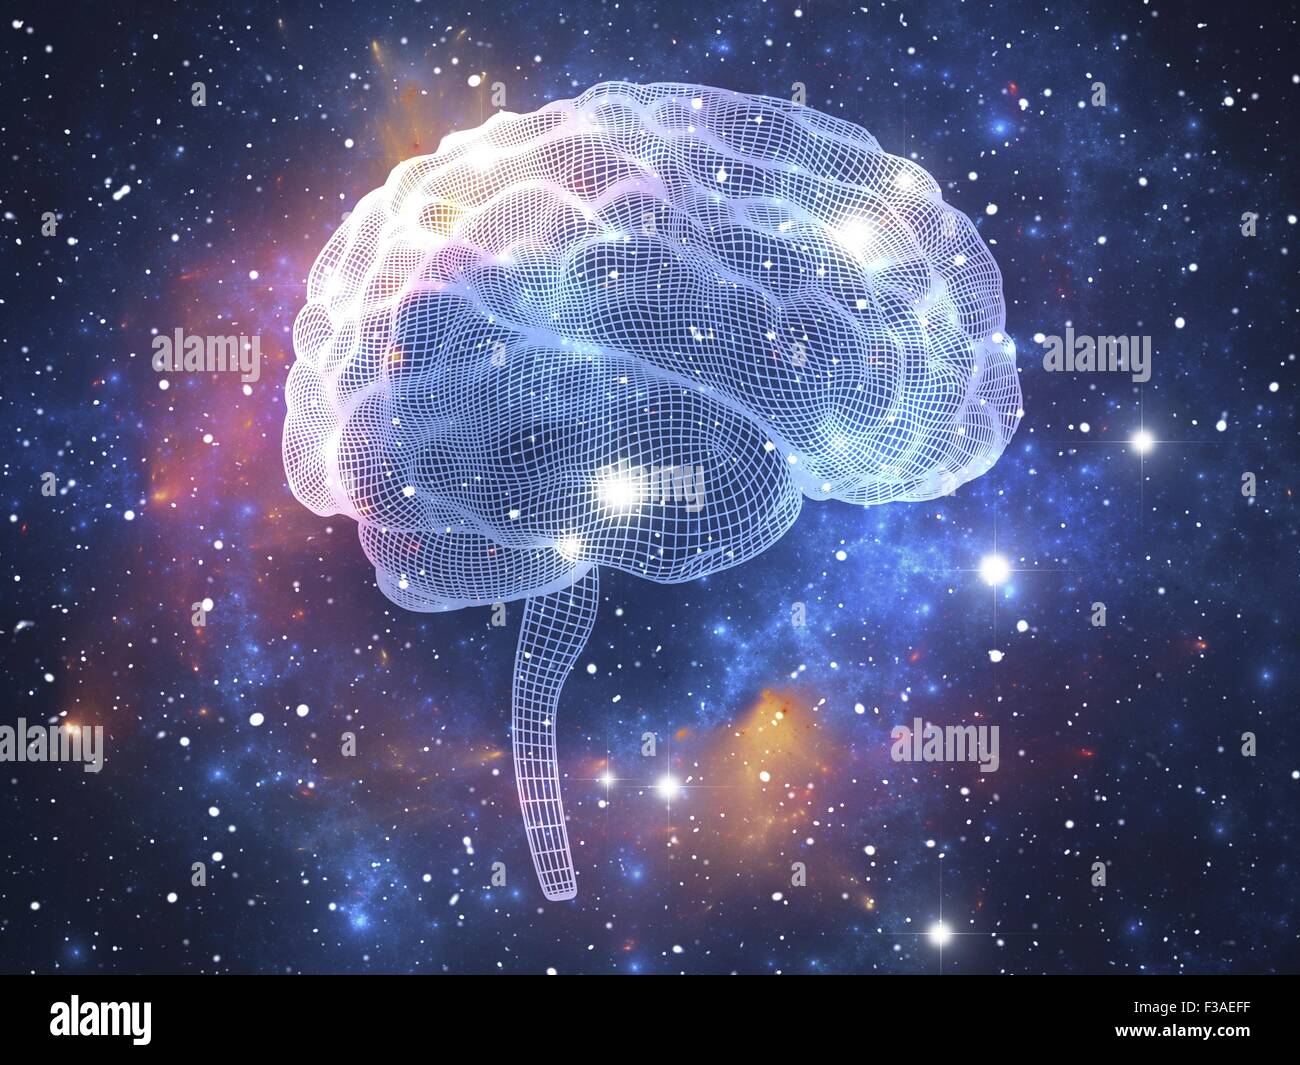 Computer illustrazione del cervello umano. Rappresentazione a wireframe, visto dal lato. In sottofondo un space nebula opere d'arte. Foto Stock